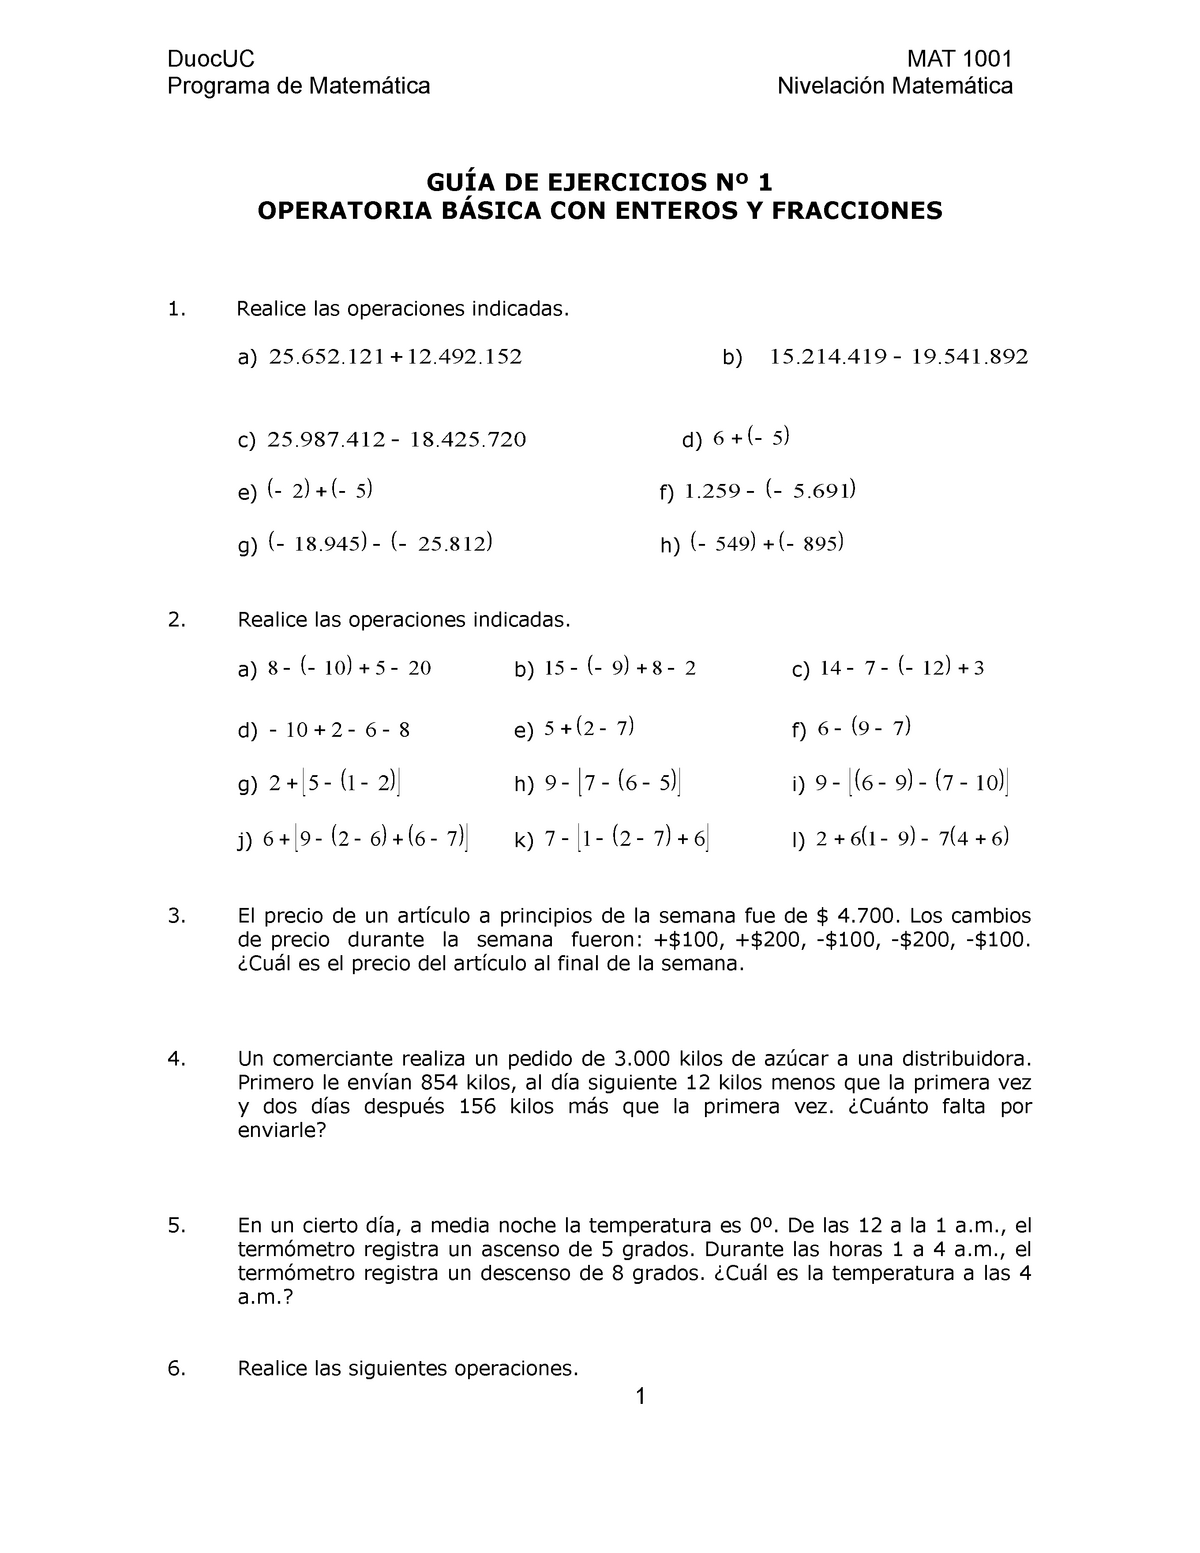 Guia De Ejercicios Operatoria Con Fracciones Programa De Matemática Nivelación Matemática 9943